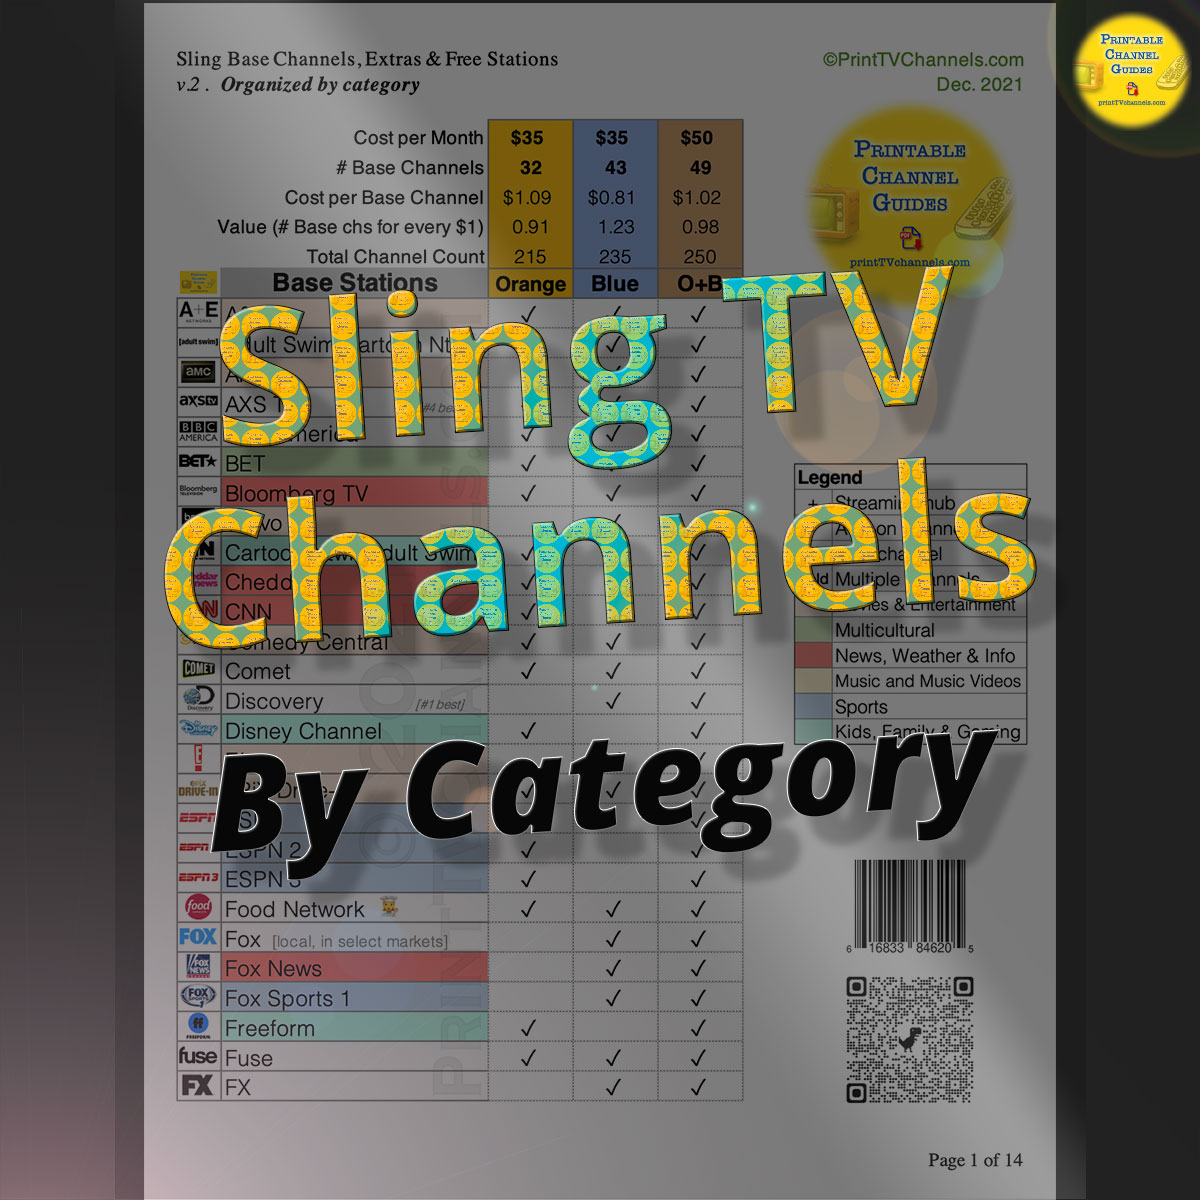 Sling Channels Guide Comparing Sling Orange, Blue and Orange + Blue